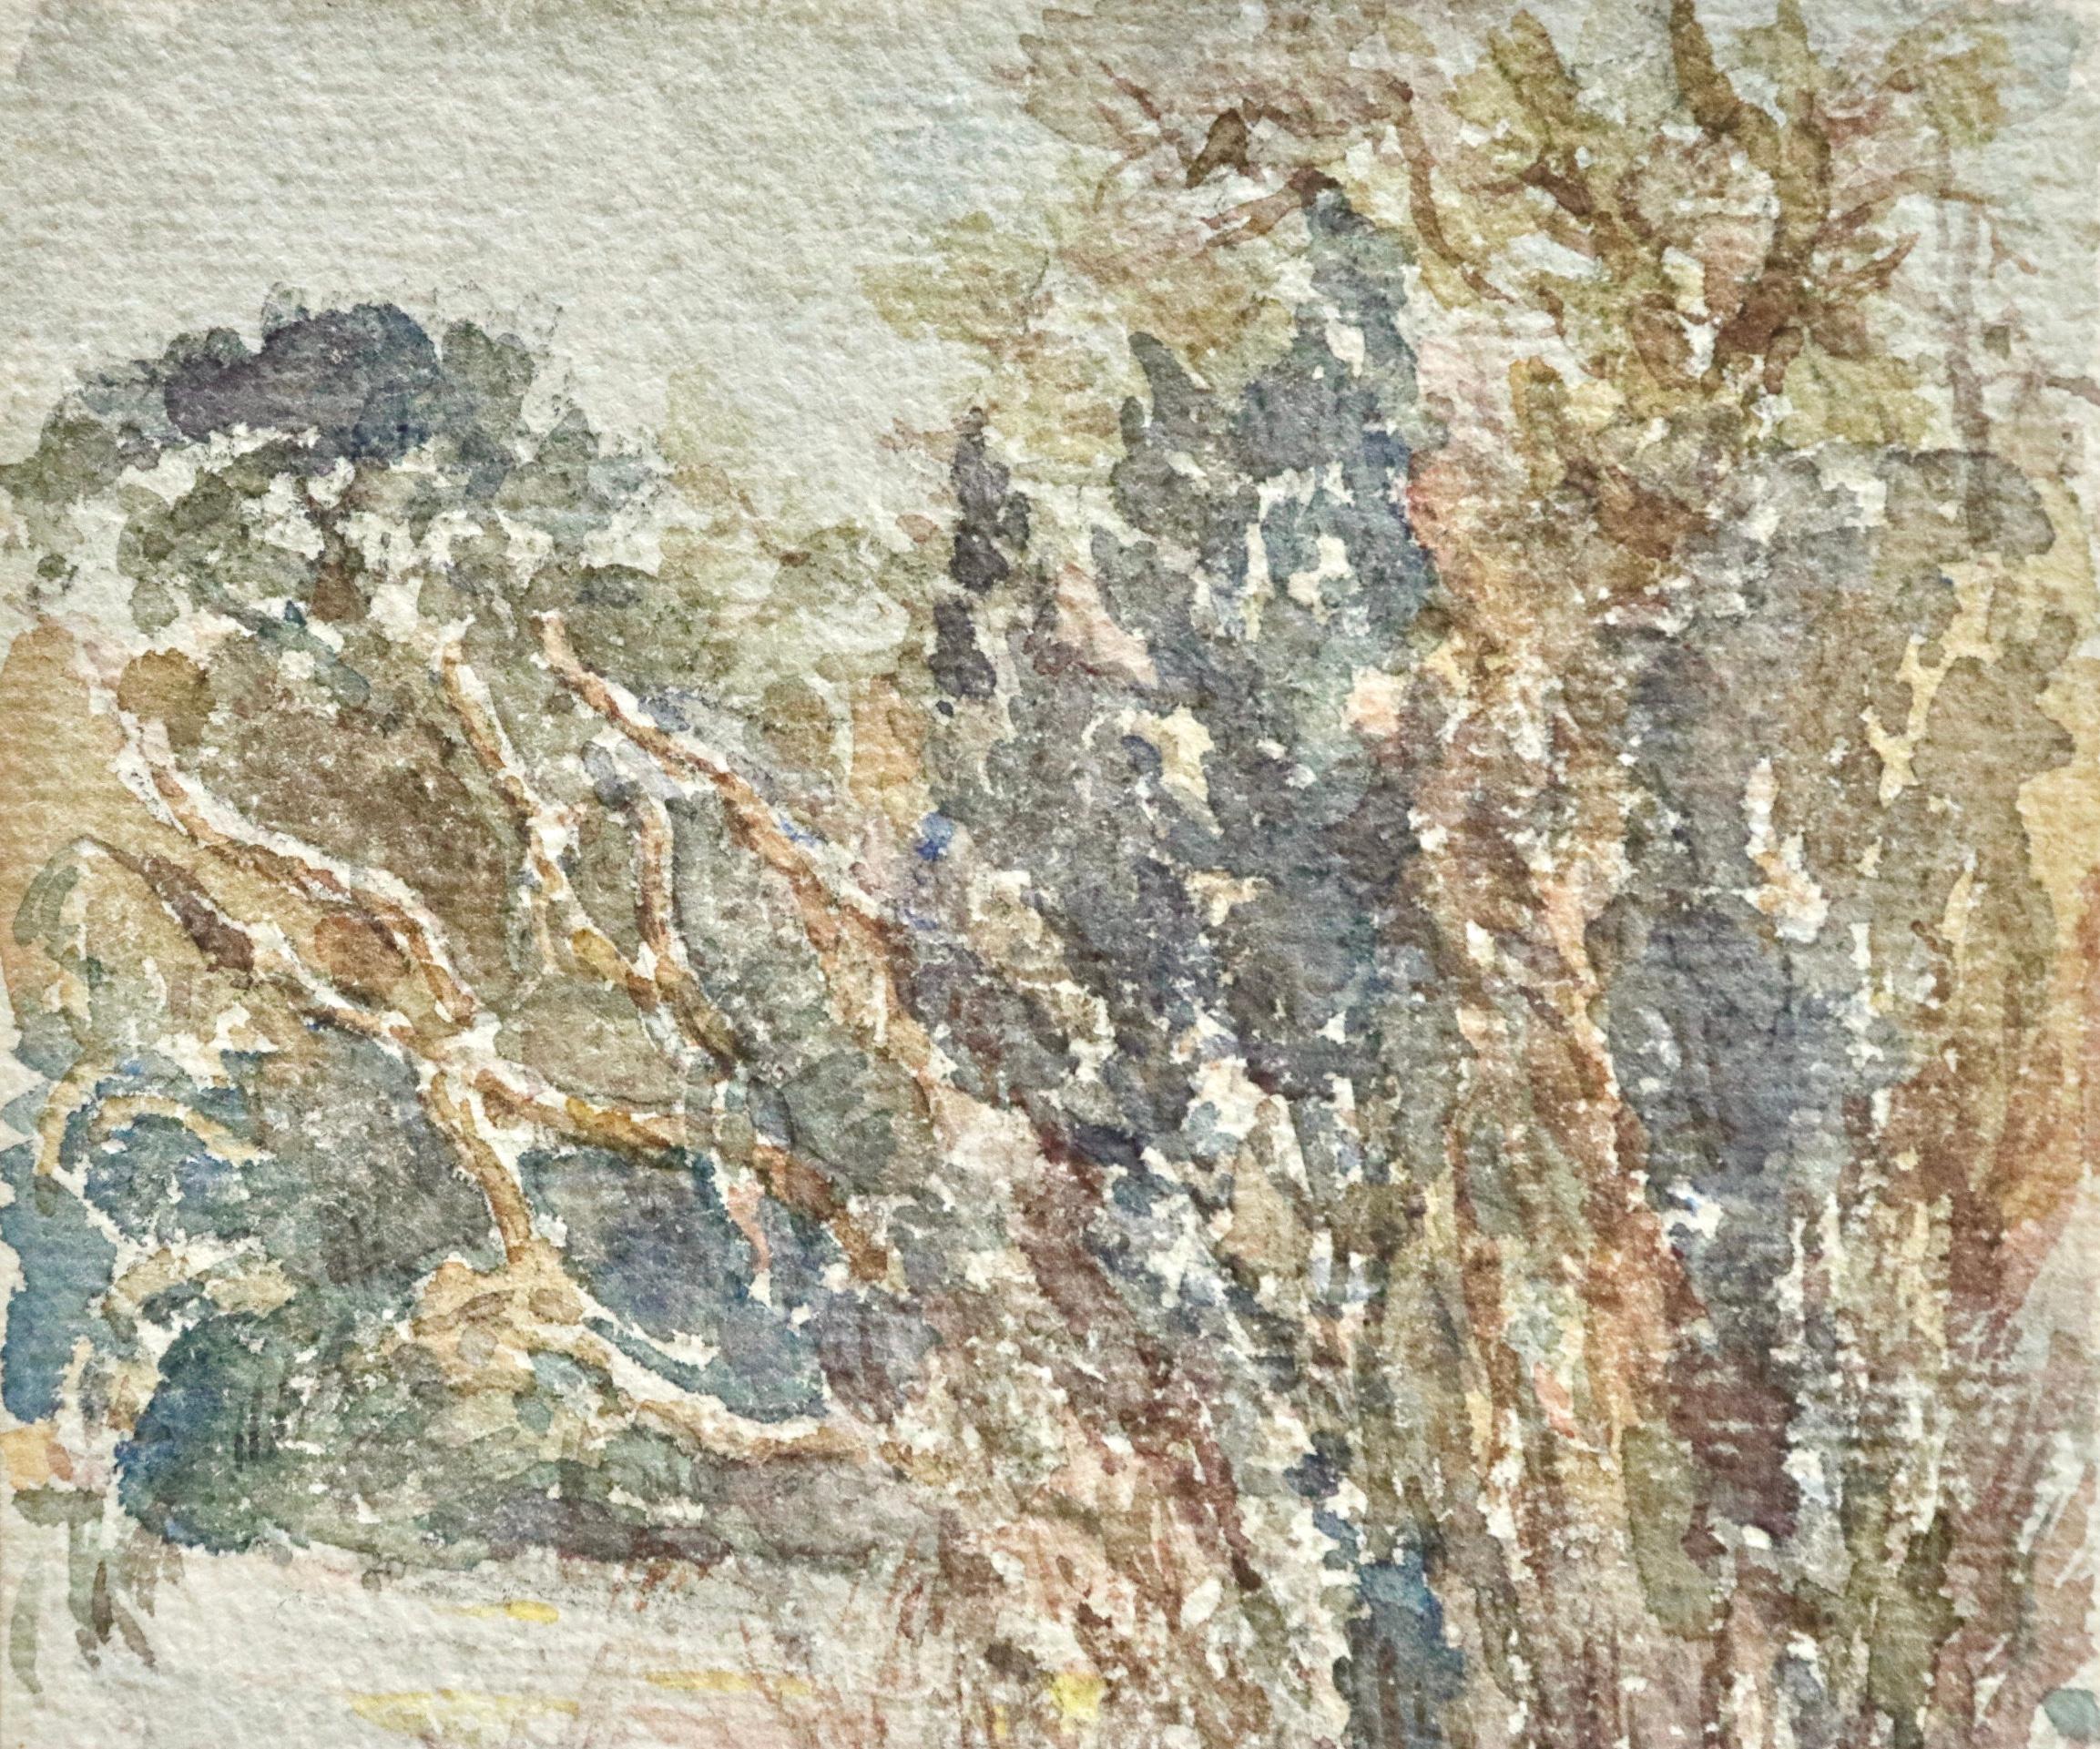 Aquarell auf Papier um 1905 von Henri Duhem, das Vögel im Schnee in einer Wintergartenszene darstellt. Signiert unten rechts. Dieses Gemälde ist derzeit nicht gerahmt, aber ein passender Rahmen kann bei Bedarf beschafft werden.

Henri Duhem